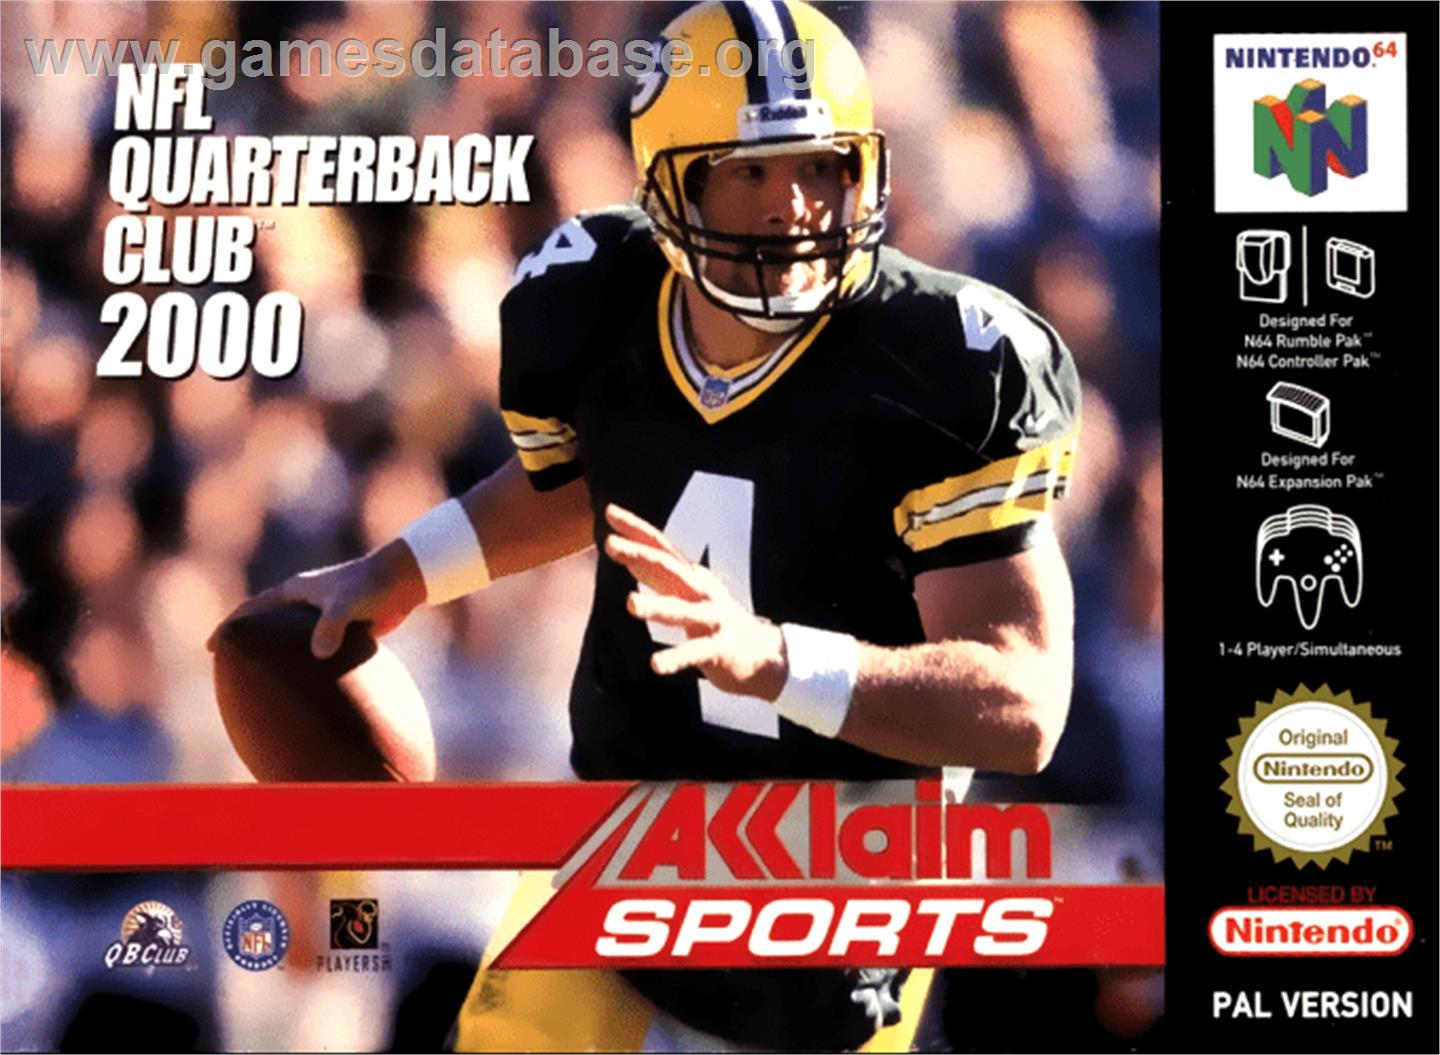 NFL Quarterback Club 2000 - Nintendo N64 - Artwork - Box